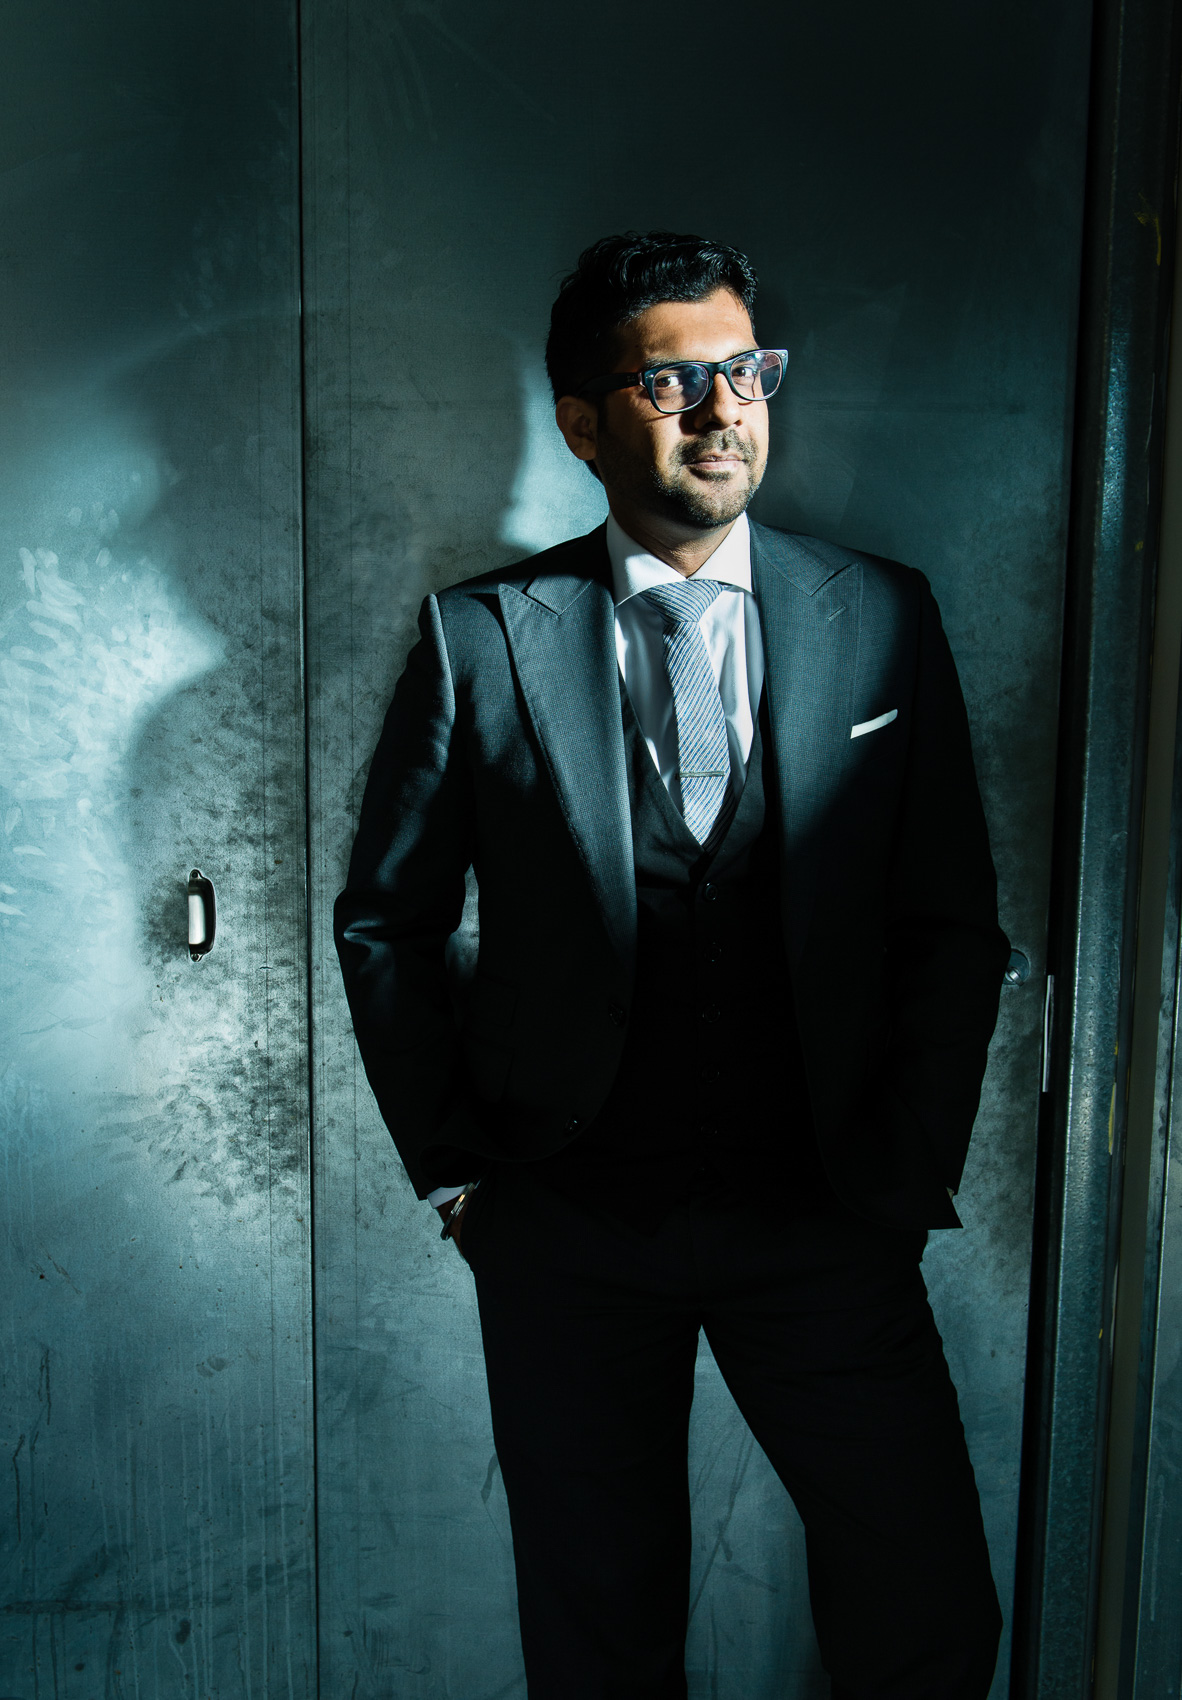 Pranav Yadav, CEO of Neuro Insight